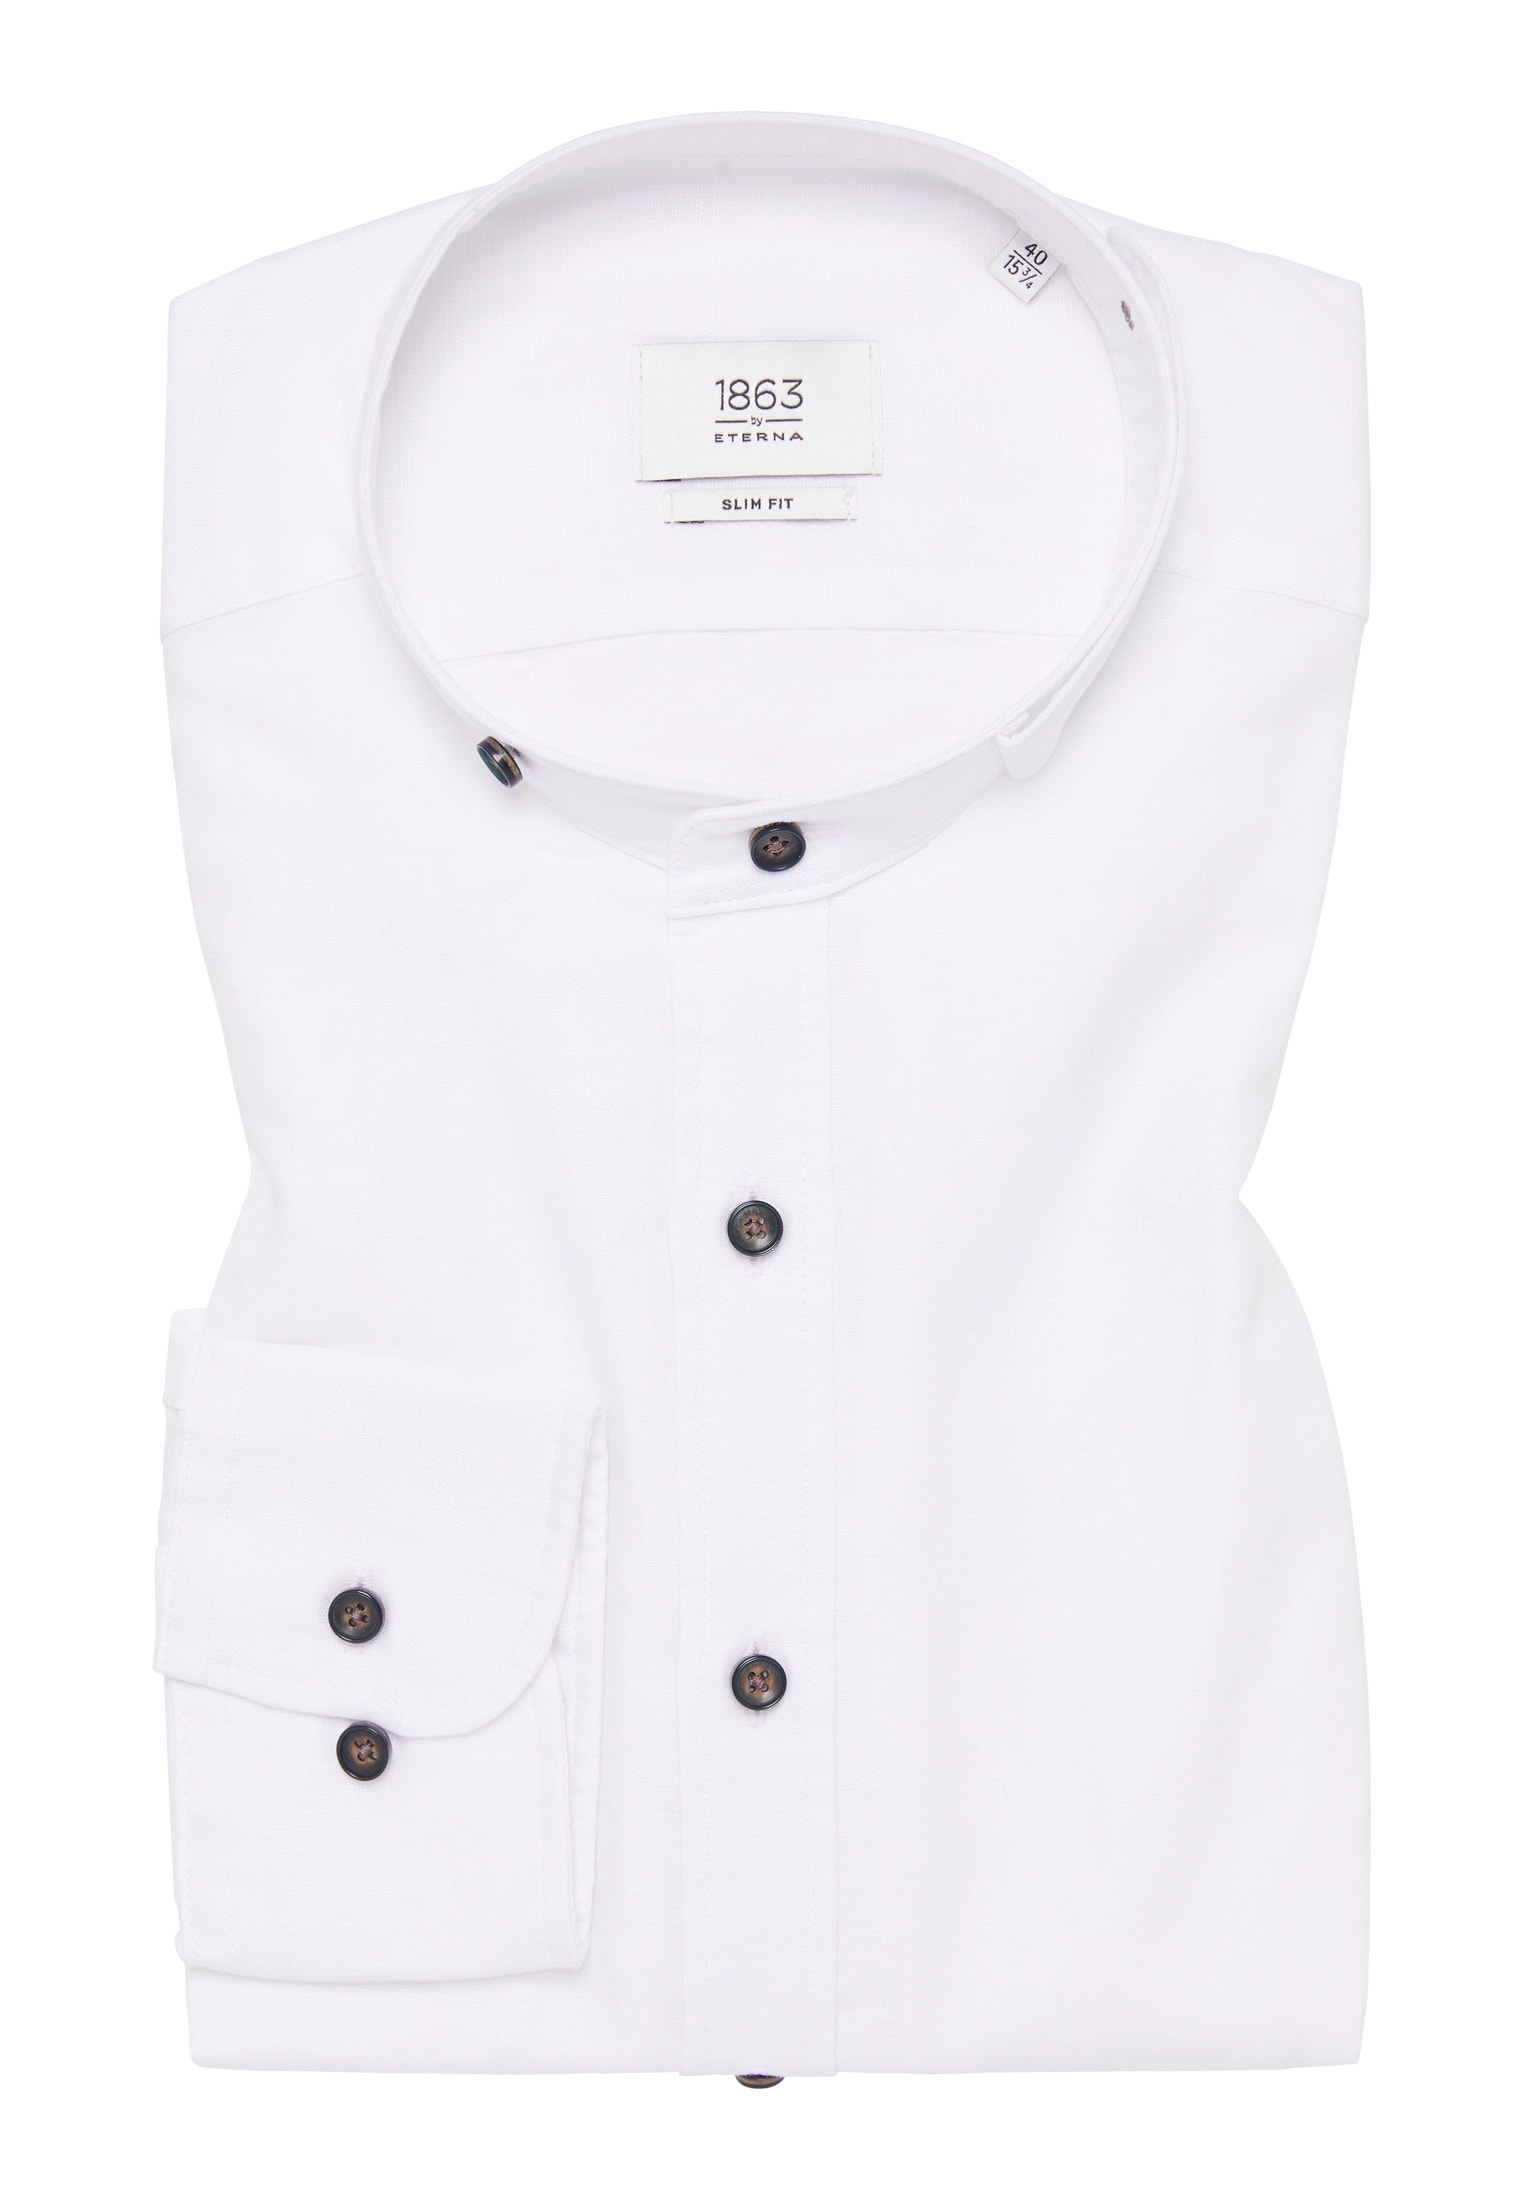 40 | Linen | | Langarm weiß weiß 1SH12593-00-01-40-1/1 FIT | unifarben Shirt in SLIM